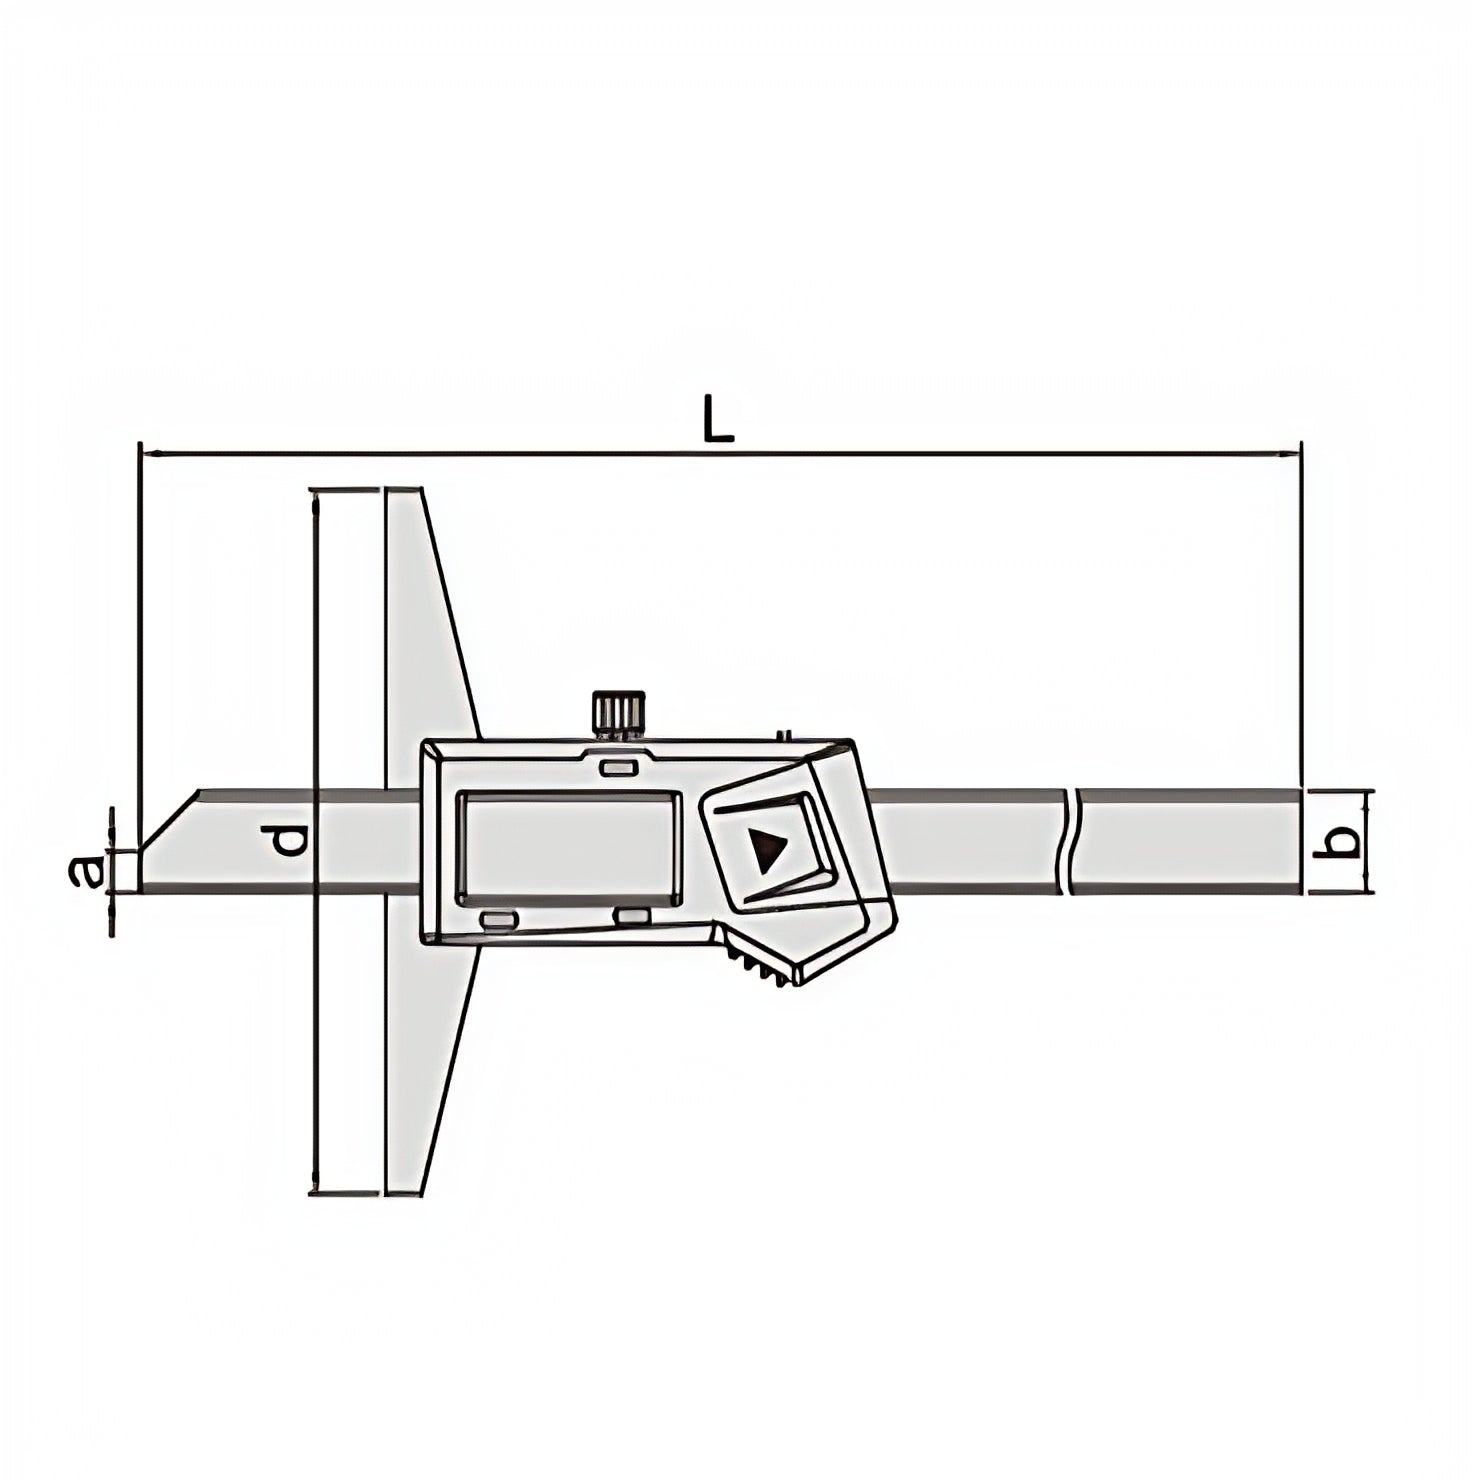 Insize Digital Depth Gauge 0-300mm/0-12" Range Series 1141-300A